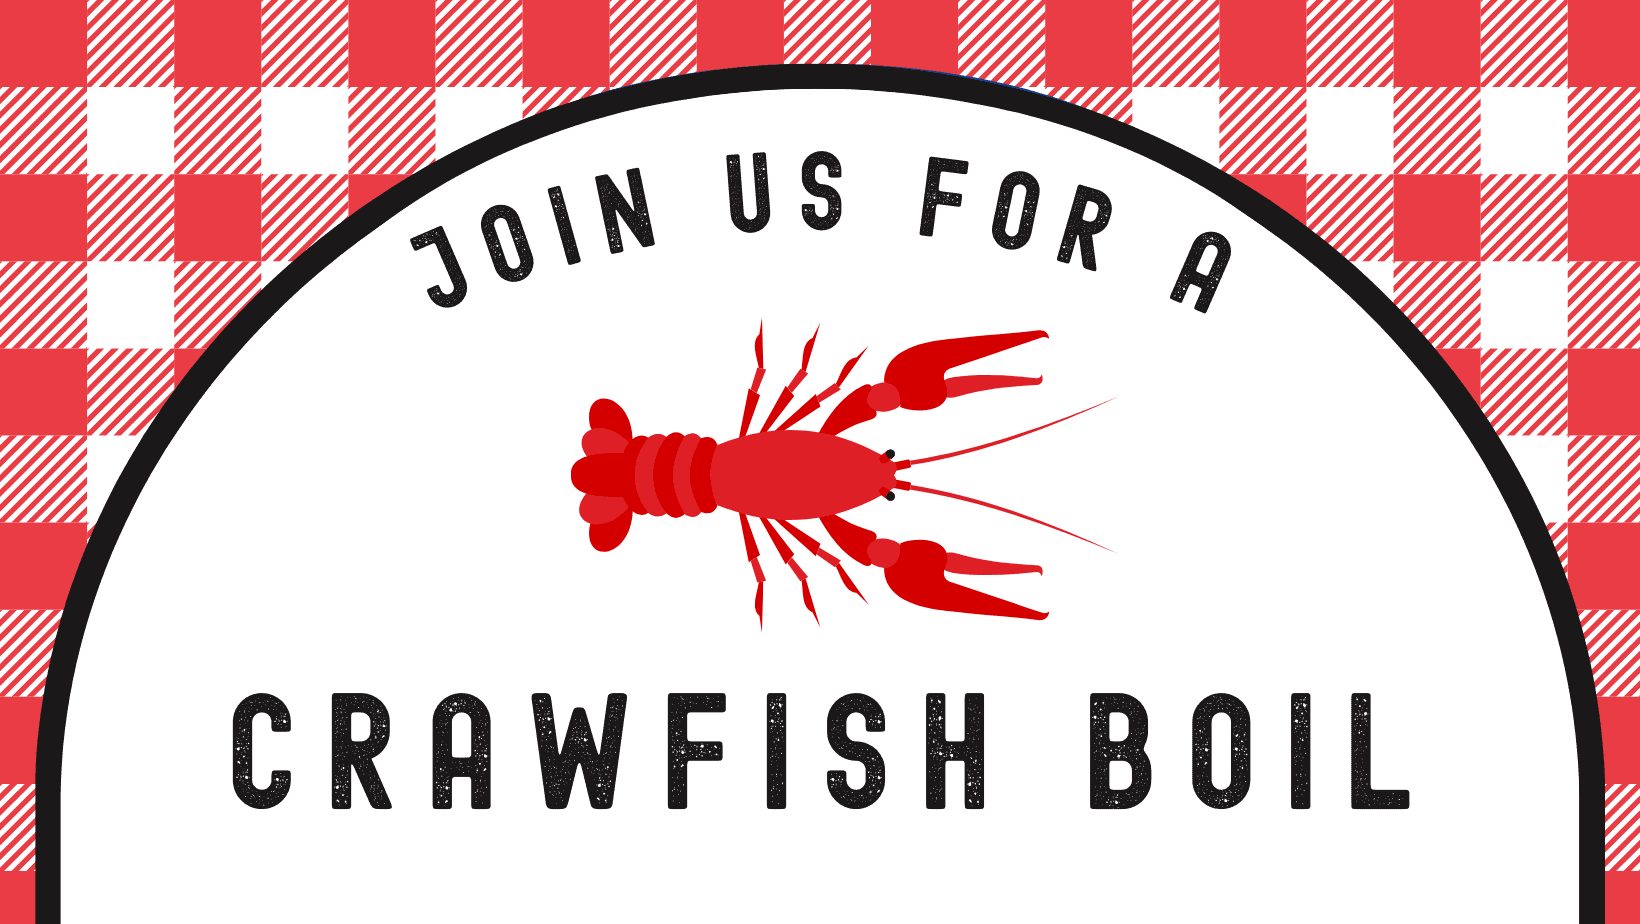 Kenner Crawfish Boil (Facebook Post (Square)) (Facebook Cover) (2)